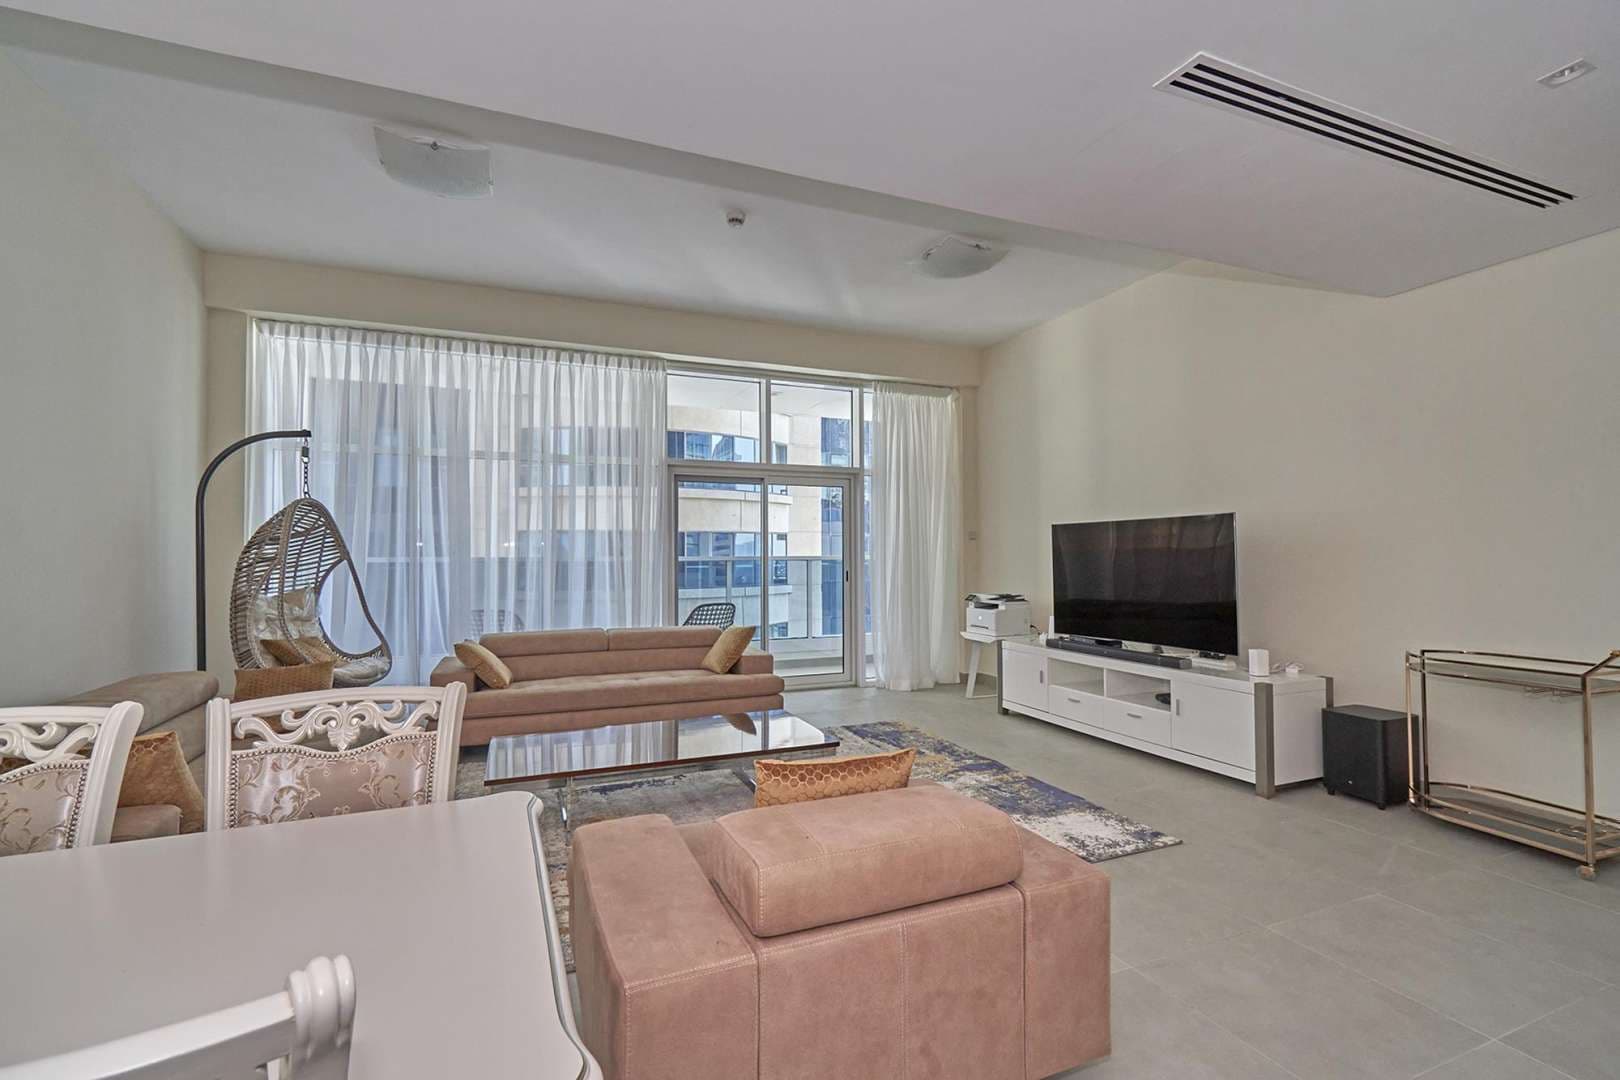 2 Bedroom Apartment For Rent Marina Arcade Lp08178 Ab7752fd6bb3f0.jpg